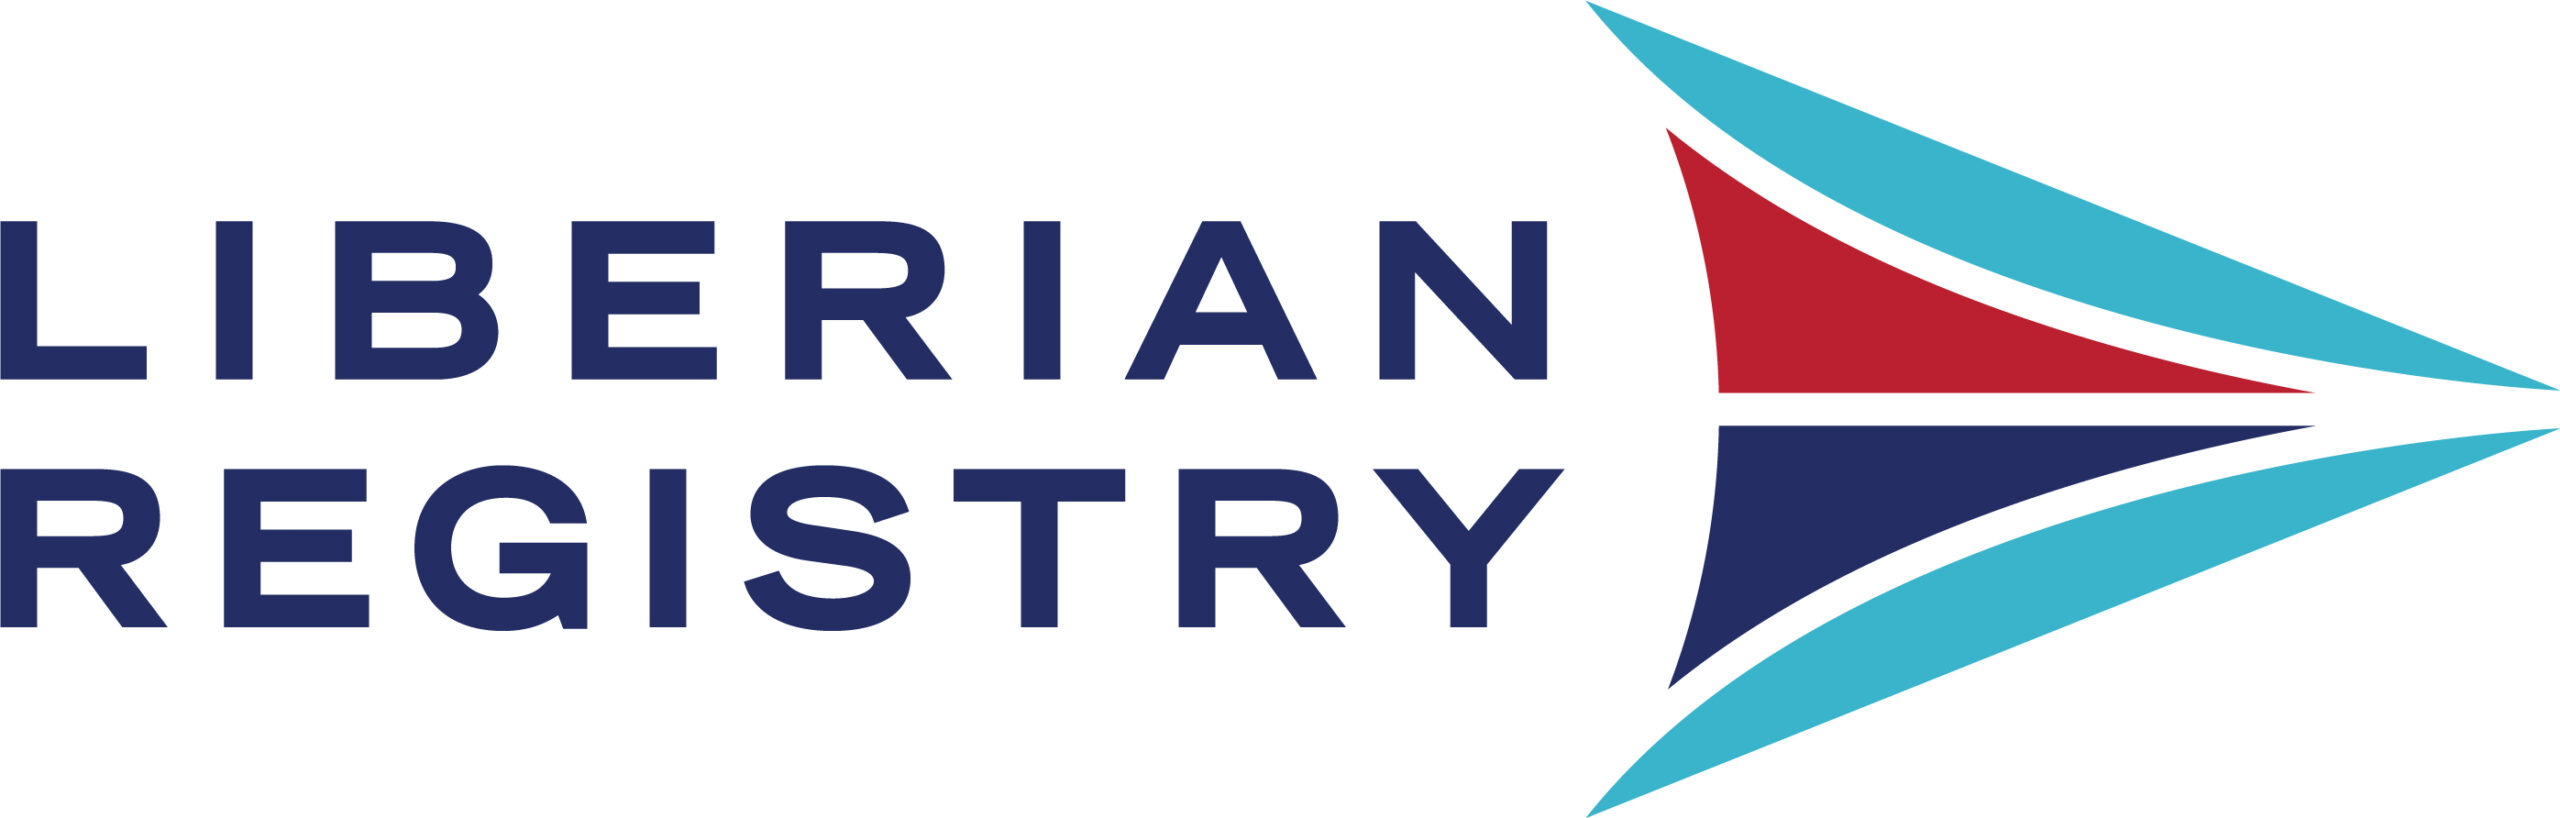 Liberian Registry Logo